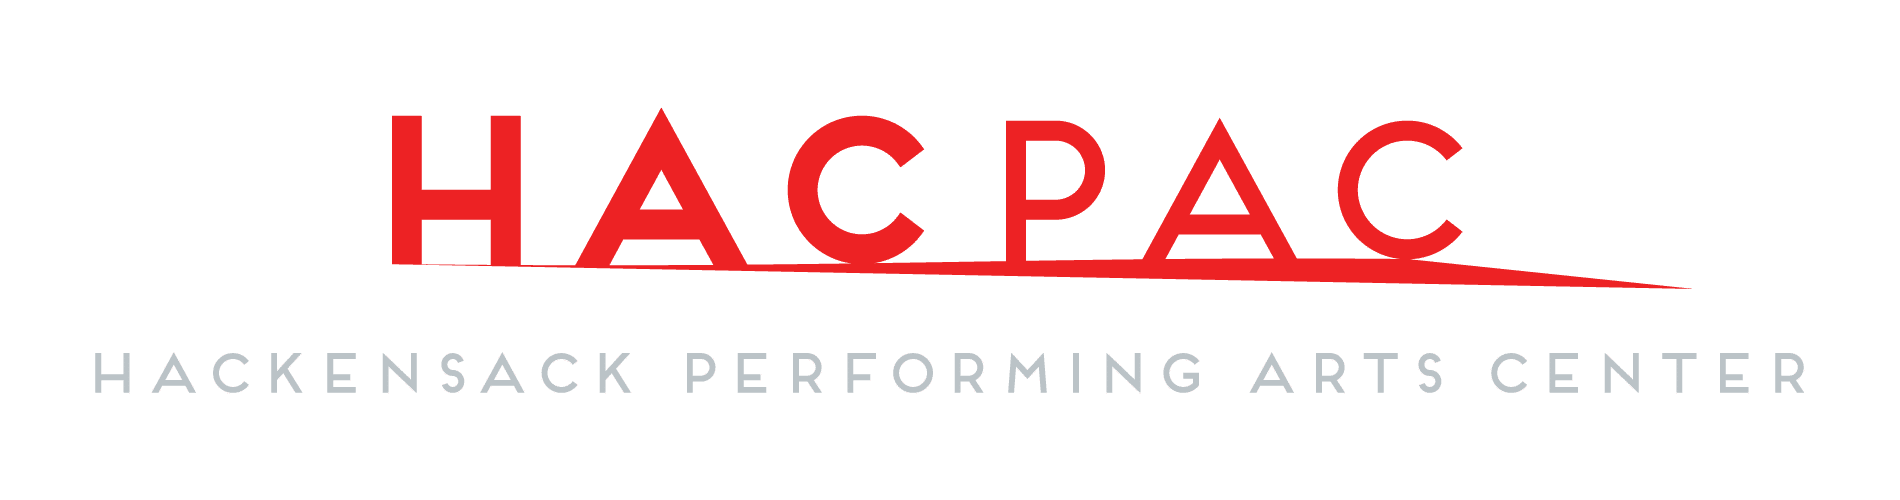 HACPAC_Logo_RGB